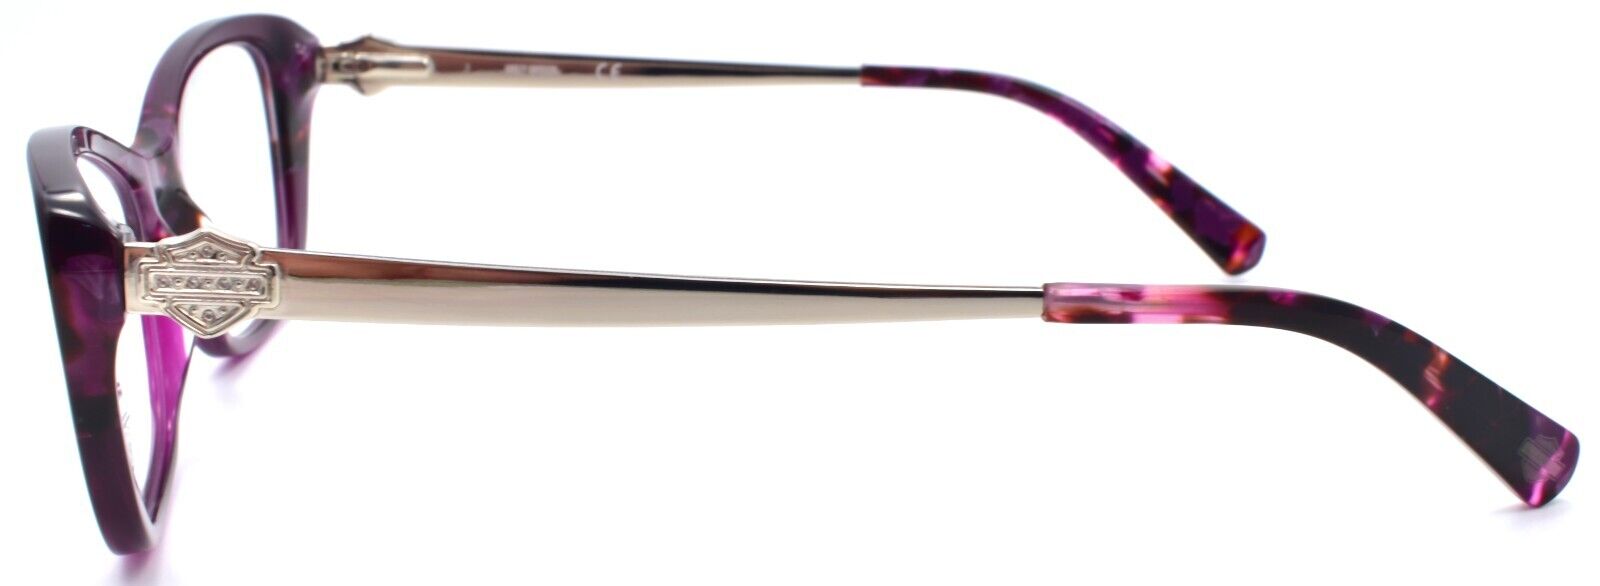 3-Harley Davidson HD0557 083 Women's Eyeglasses Frames 51-16-140 Violet-889214243089-IKSpecs